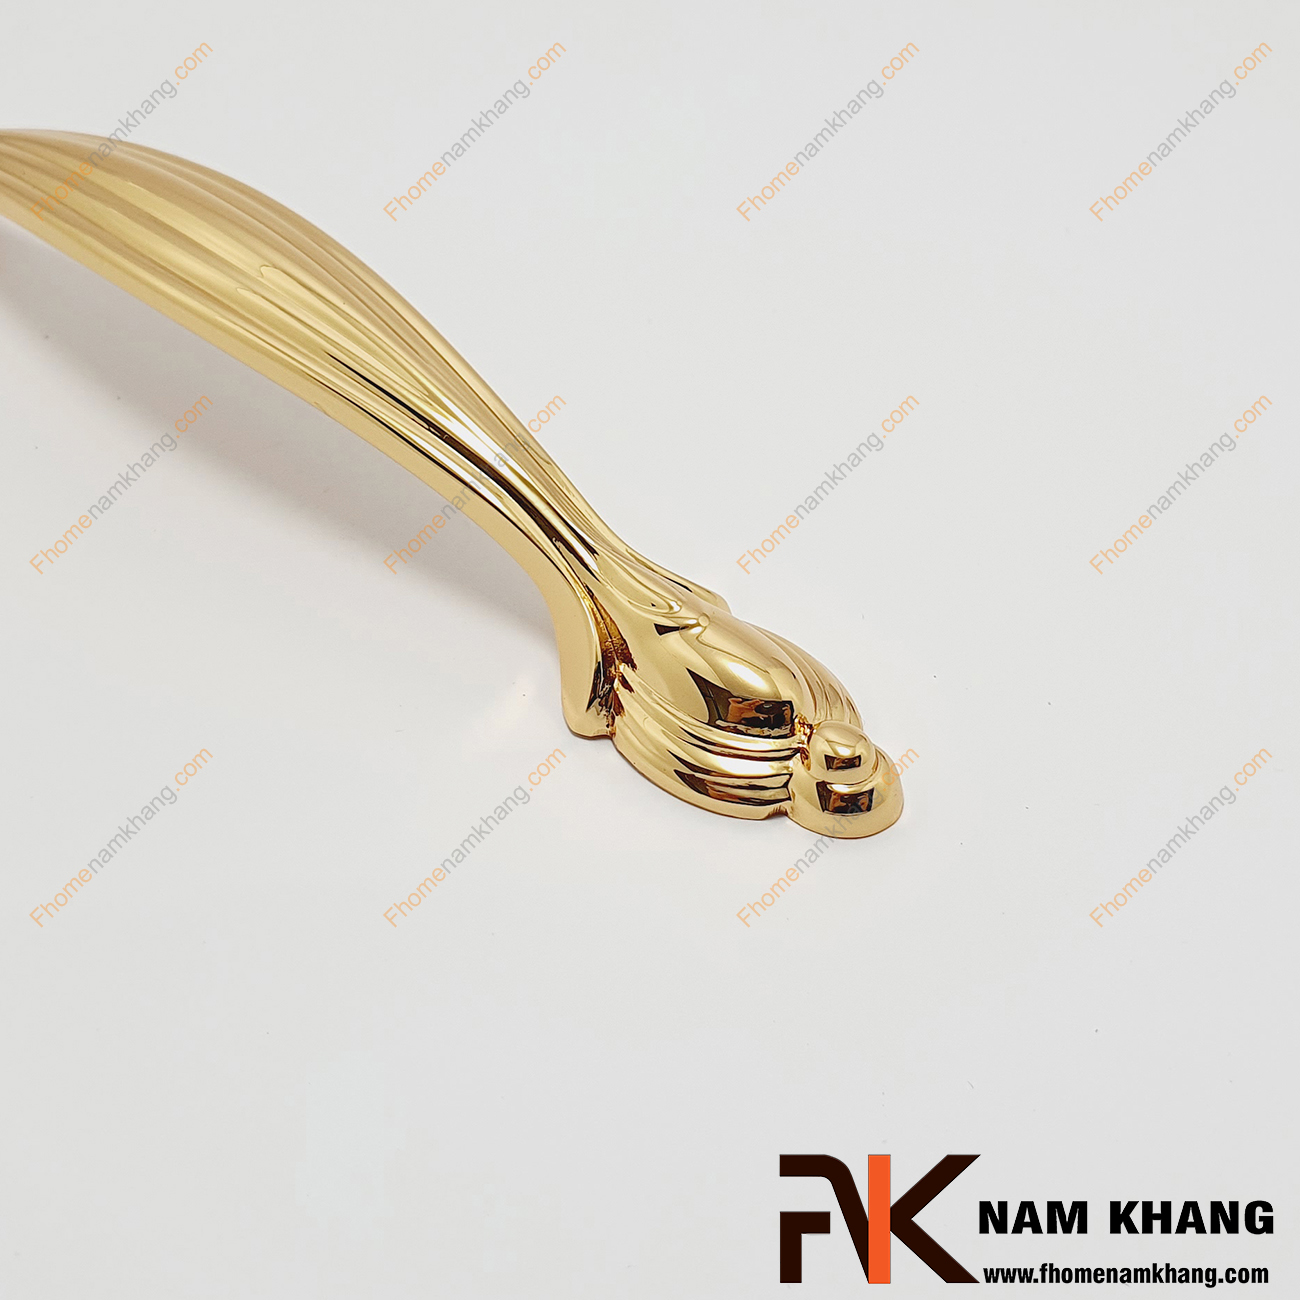 Tay nắm tủ cao cấp bằng đồng vàng bóng NK154A-128DV, một mẫu tay nắm tủ cổ điển cao cấp sử dụng thiết kế các đường gân nổi và bo tròn kỹ thuật mang lại vẻ đẹp hoàn hảo cho dòng sản phẩm từ kim loại.